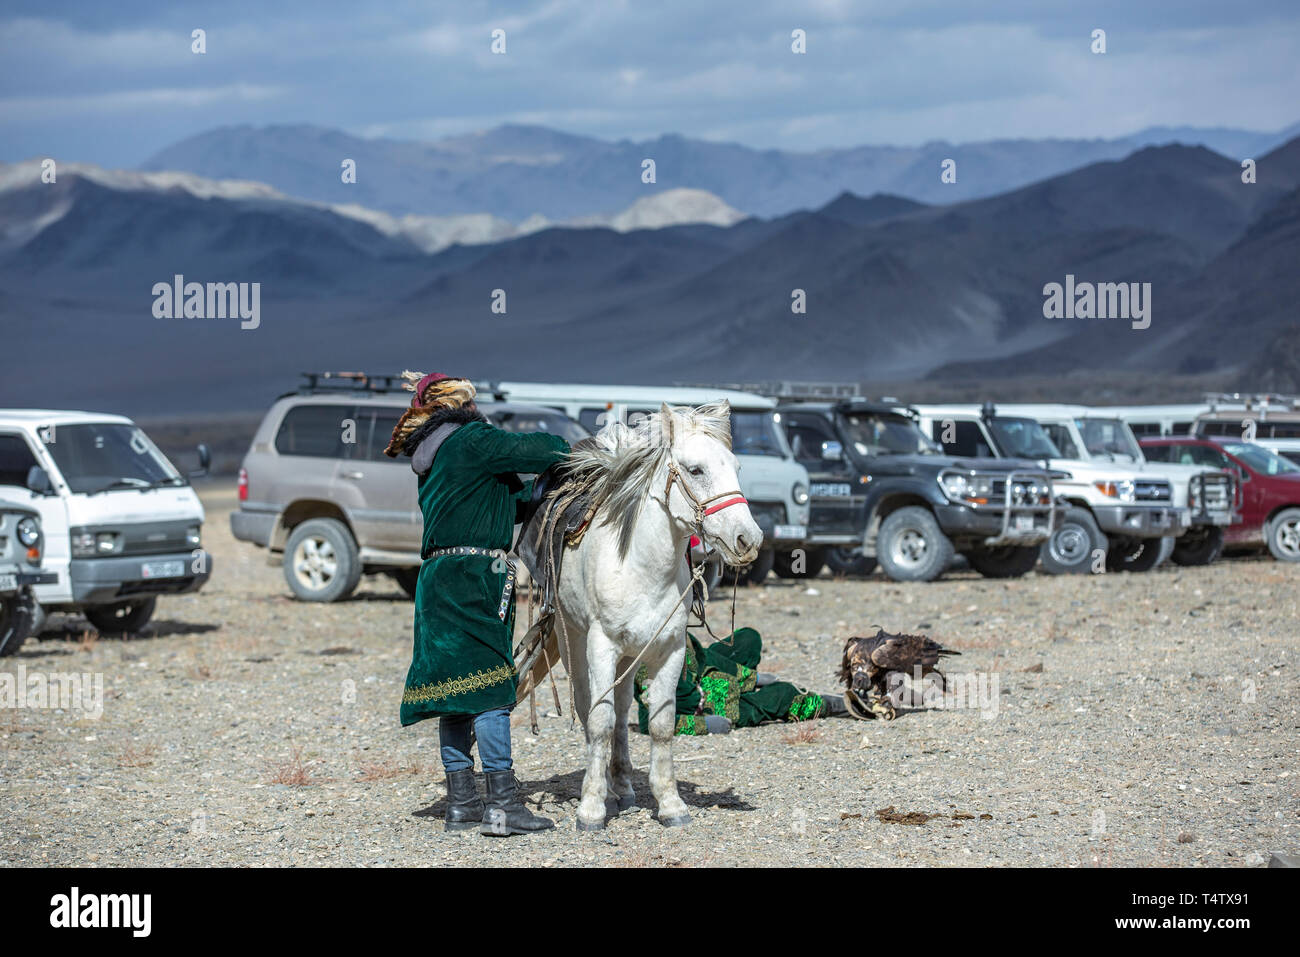 Bayan Ulgii, Mongolie, 3 octobre 2015 : kazakh man in traditional pardessus et chapeau avec son cheval dans un parking dans la nature Banque D'Images